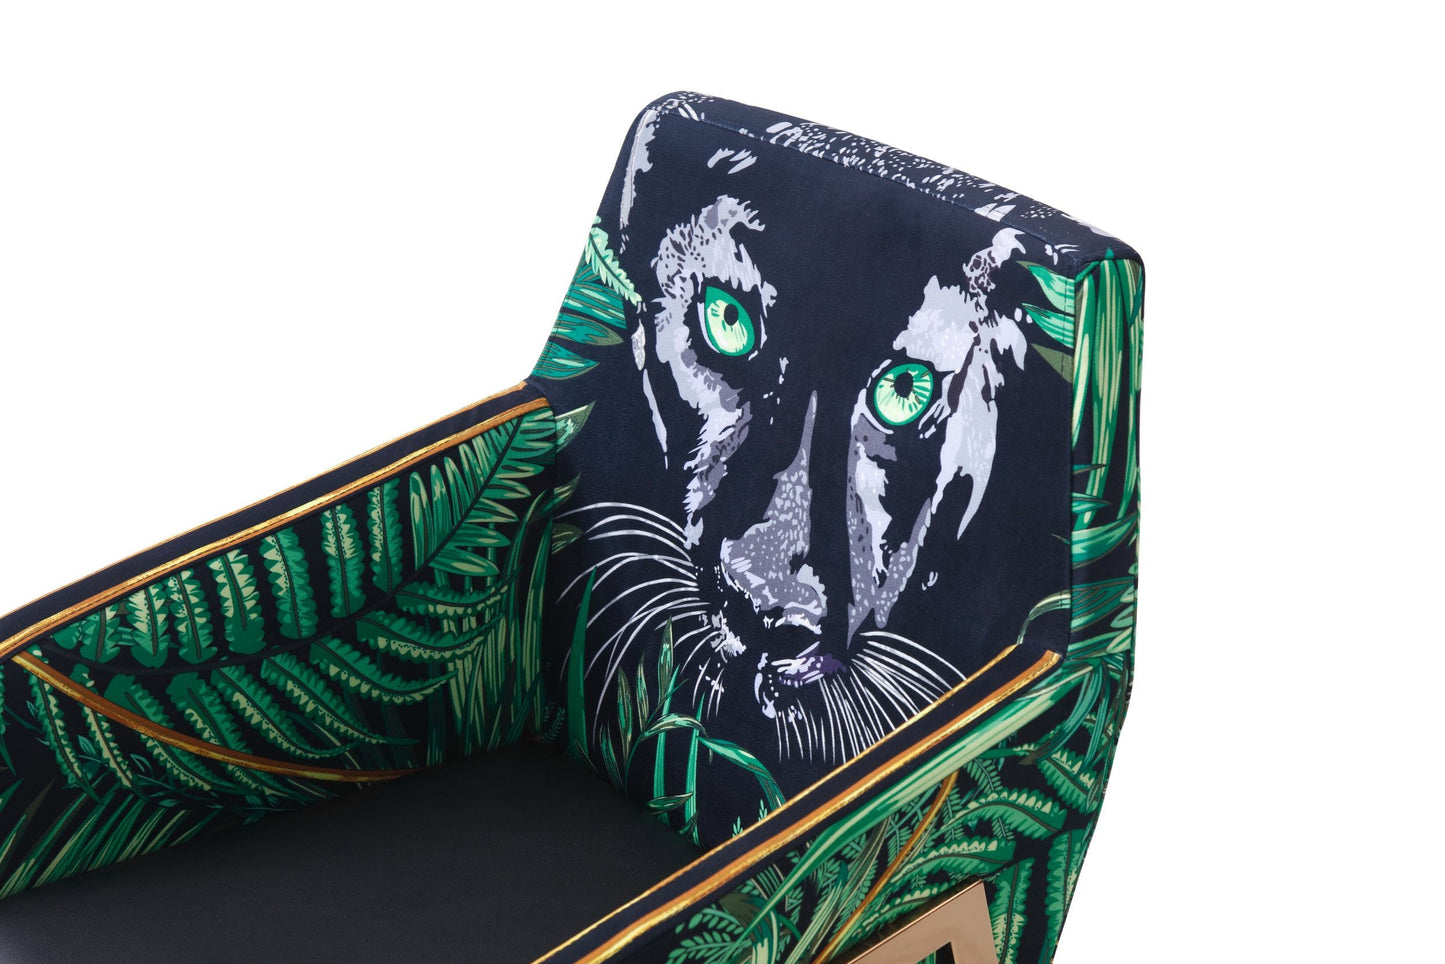 VIG Furniture Modrest Fierce Black Rosgold Panther Dining Chair